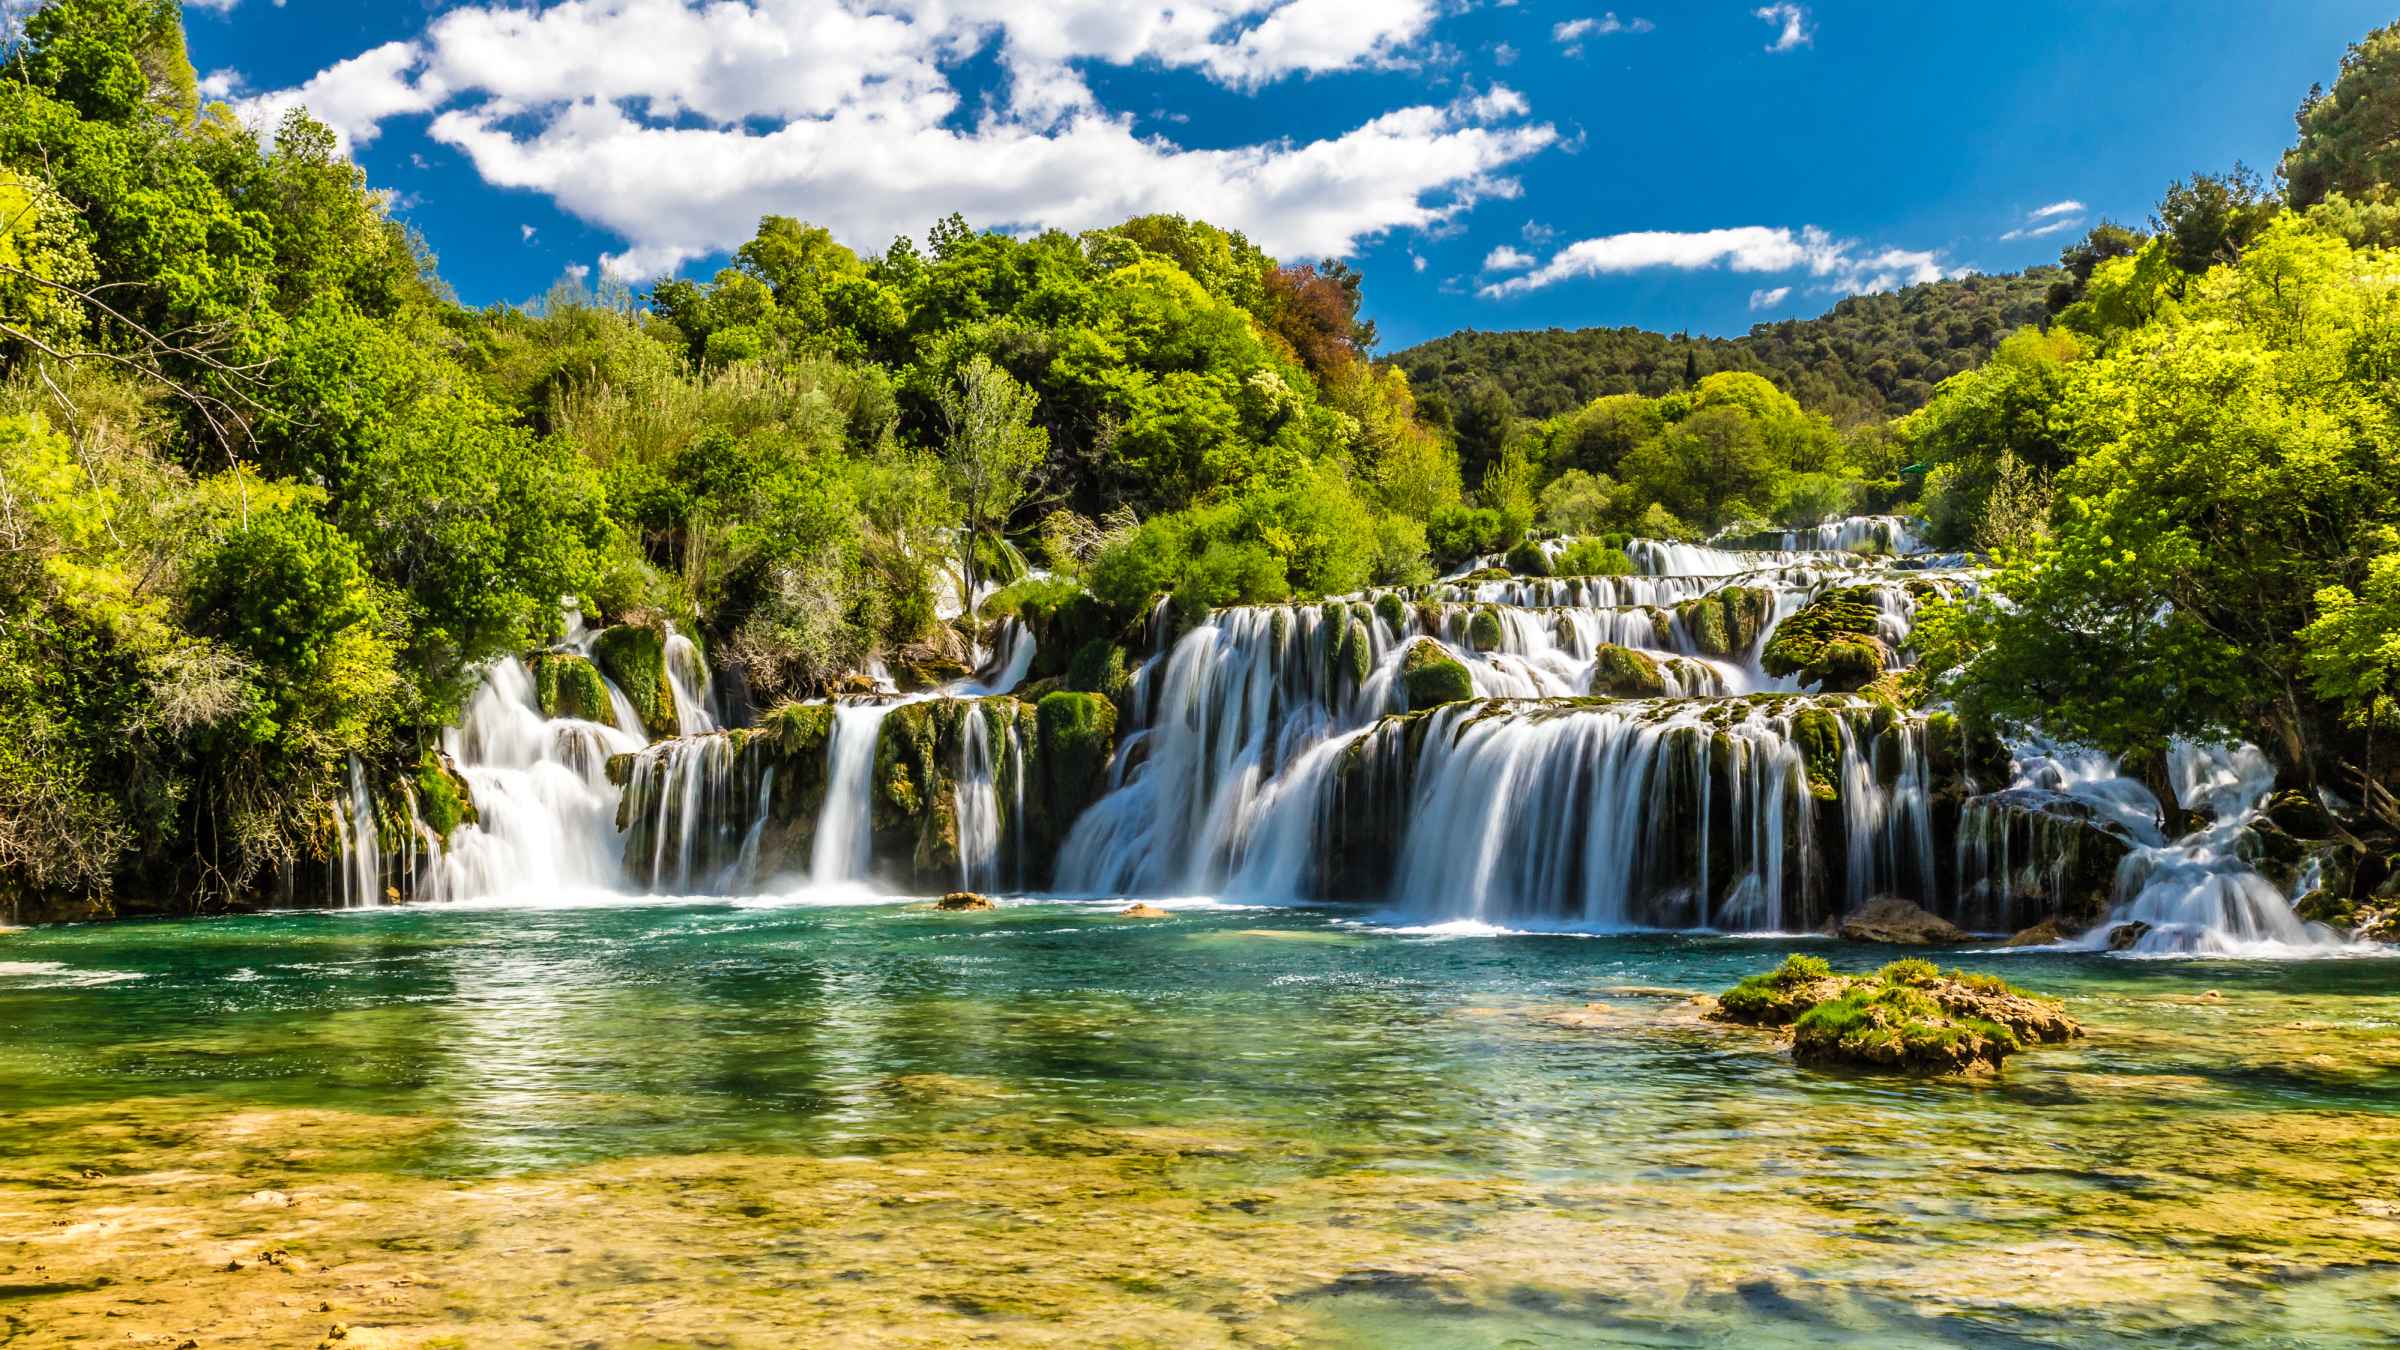 Croacia 2021 Os 10 Melhores Tours Viagens E Atividades Com Fotos Coisas Para Fazer No Destino Croacia Getyourguide